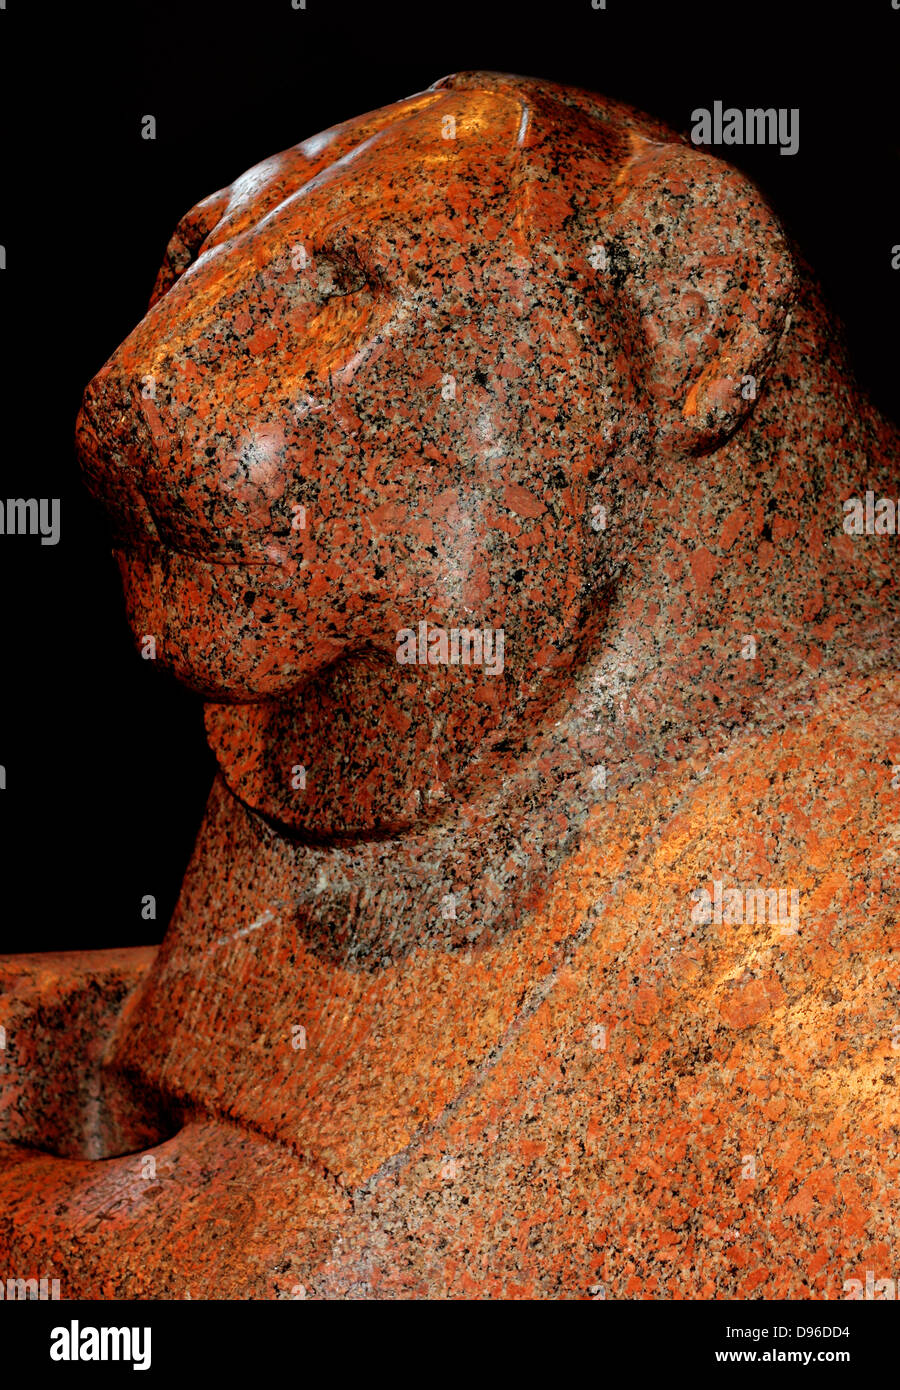 Prudhoe Lion, achtzehnten Dynastie (ca. 1400 v. Chr.) von Gebel Barkal im Sudan. Antike Ägyptische Abbildung eines Löwen aus rotem Granit, ein passendes Paar. Ursprünglich aus dem Tempel von Soleb in Nubien. Stockfoto